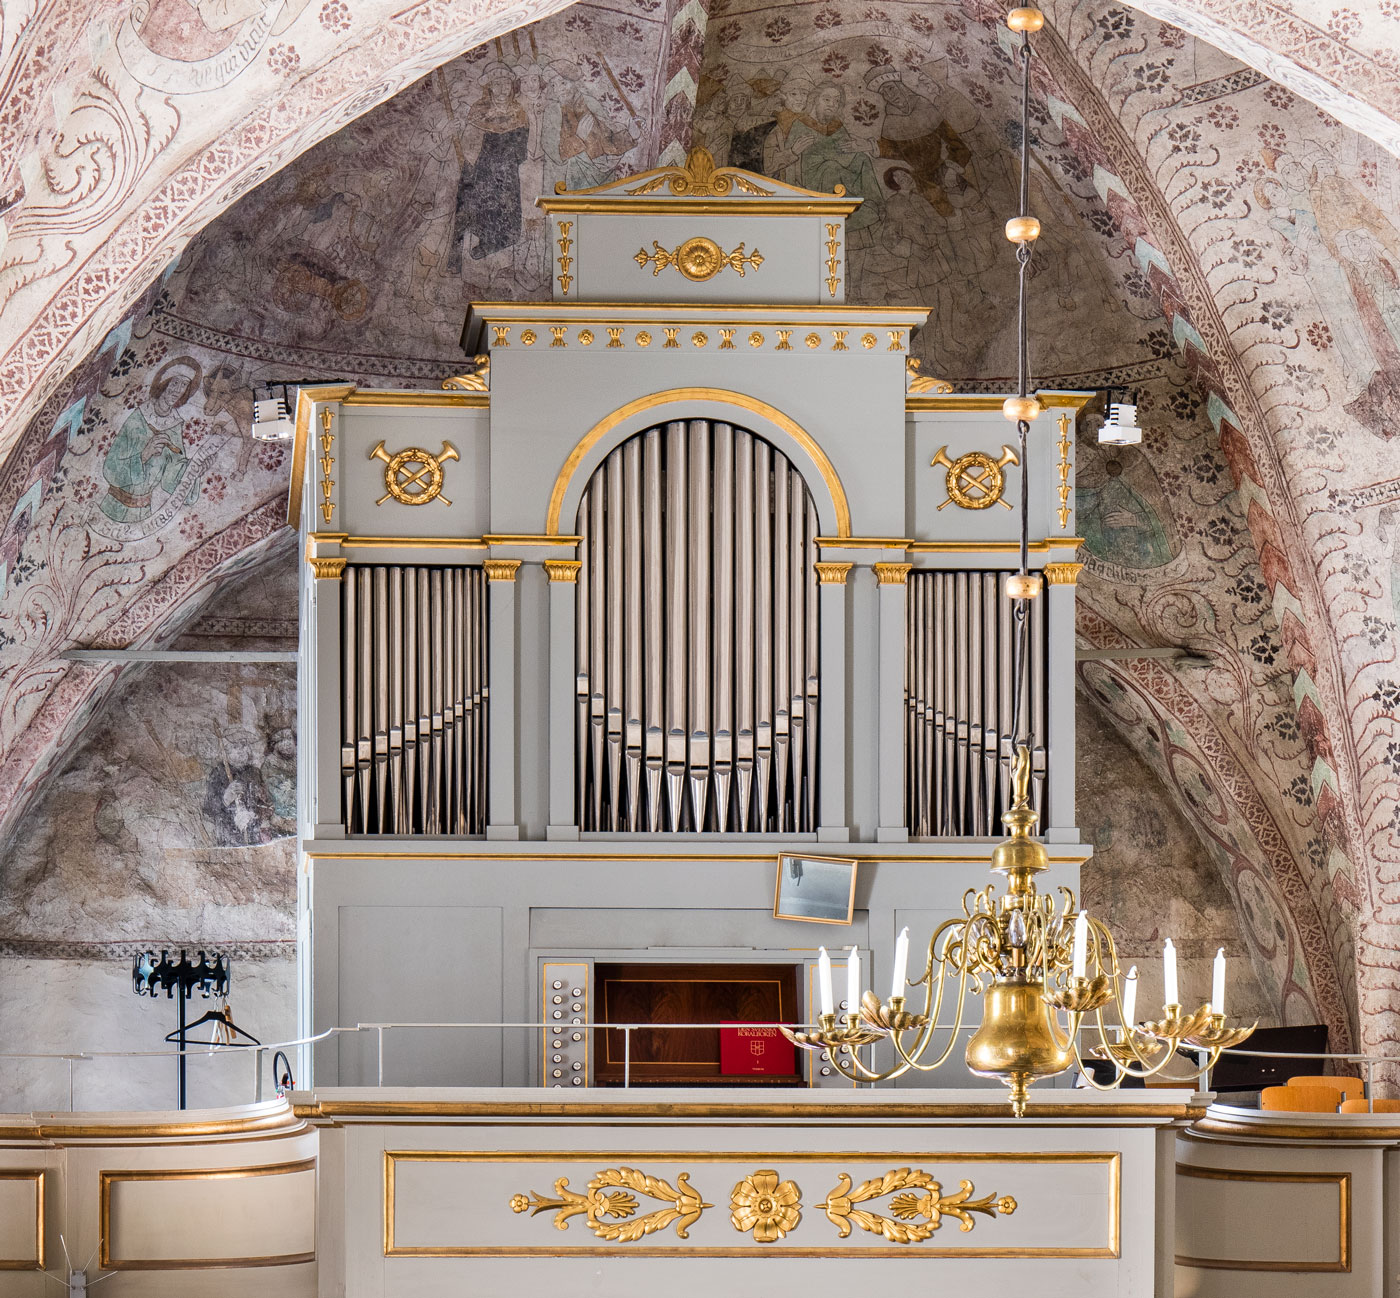 Orgel - Almunge kyrka